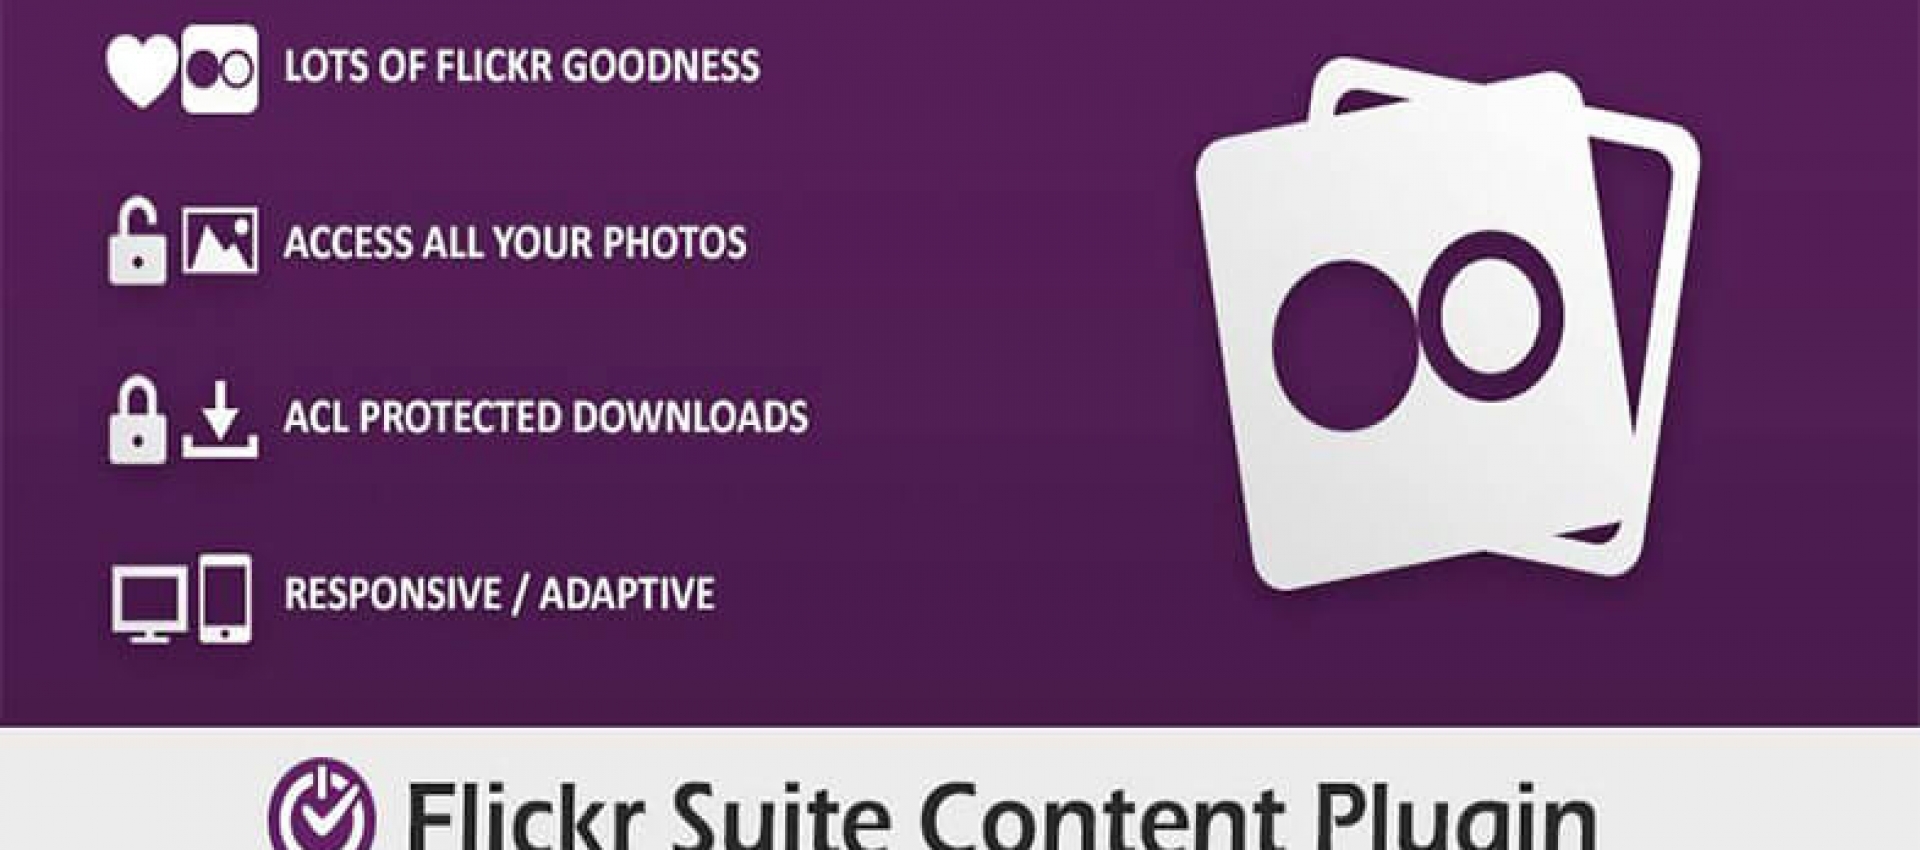 Flickr Suite Content Plugini